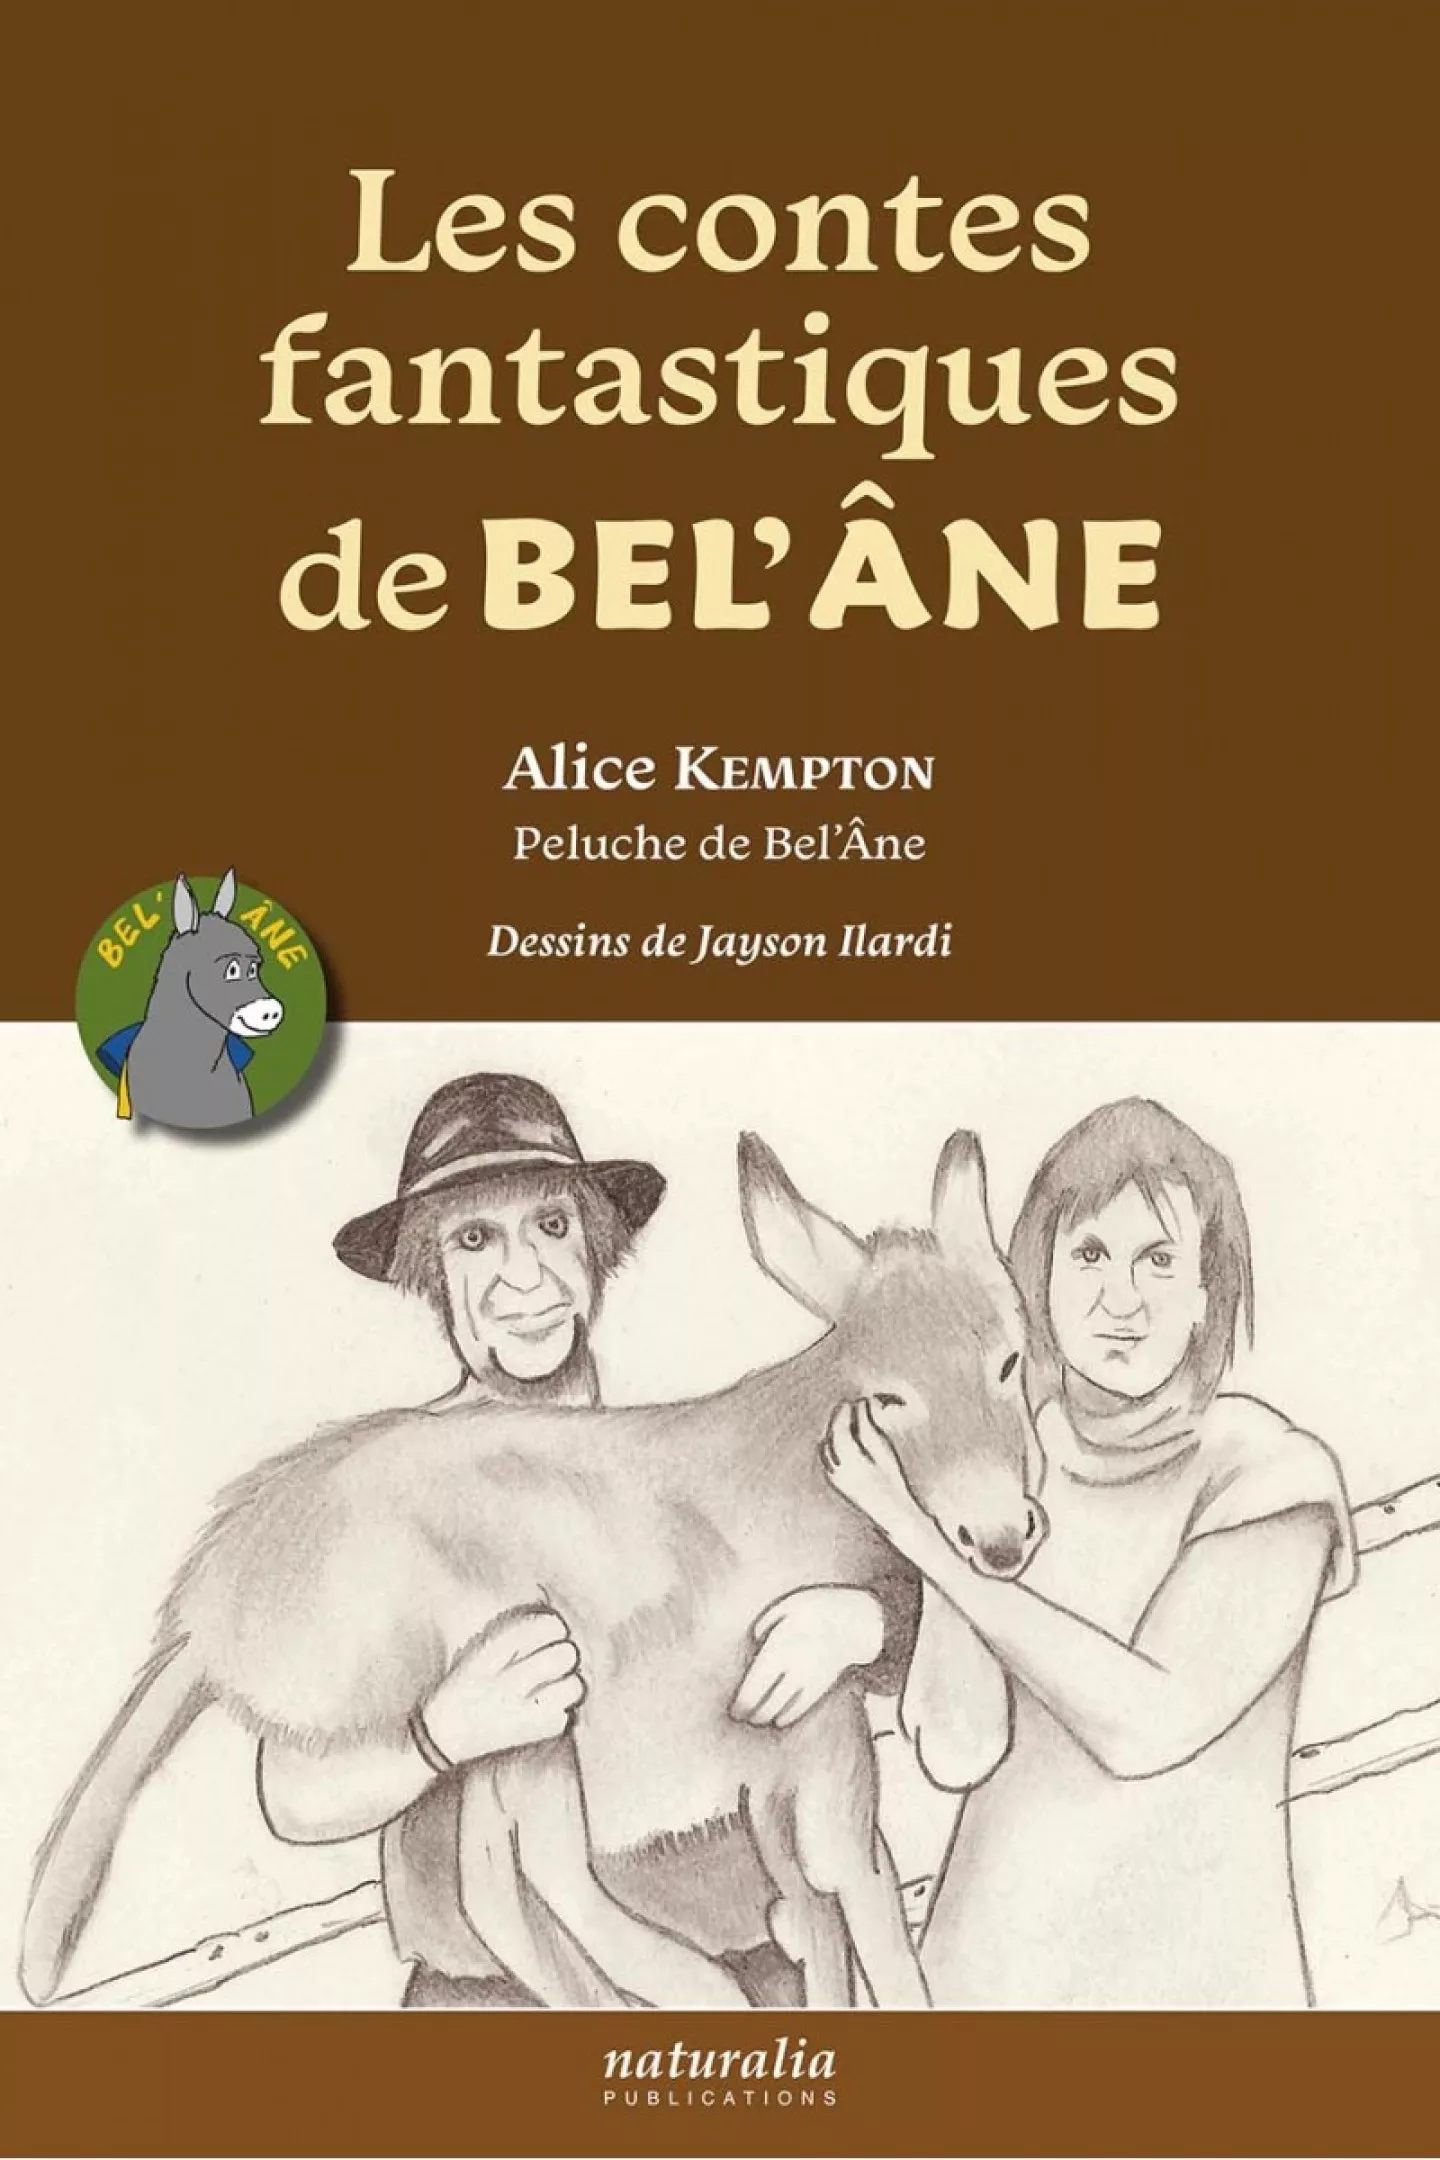 Les contes fantastiques de Bel'Âne d'Alice Kempton